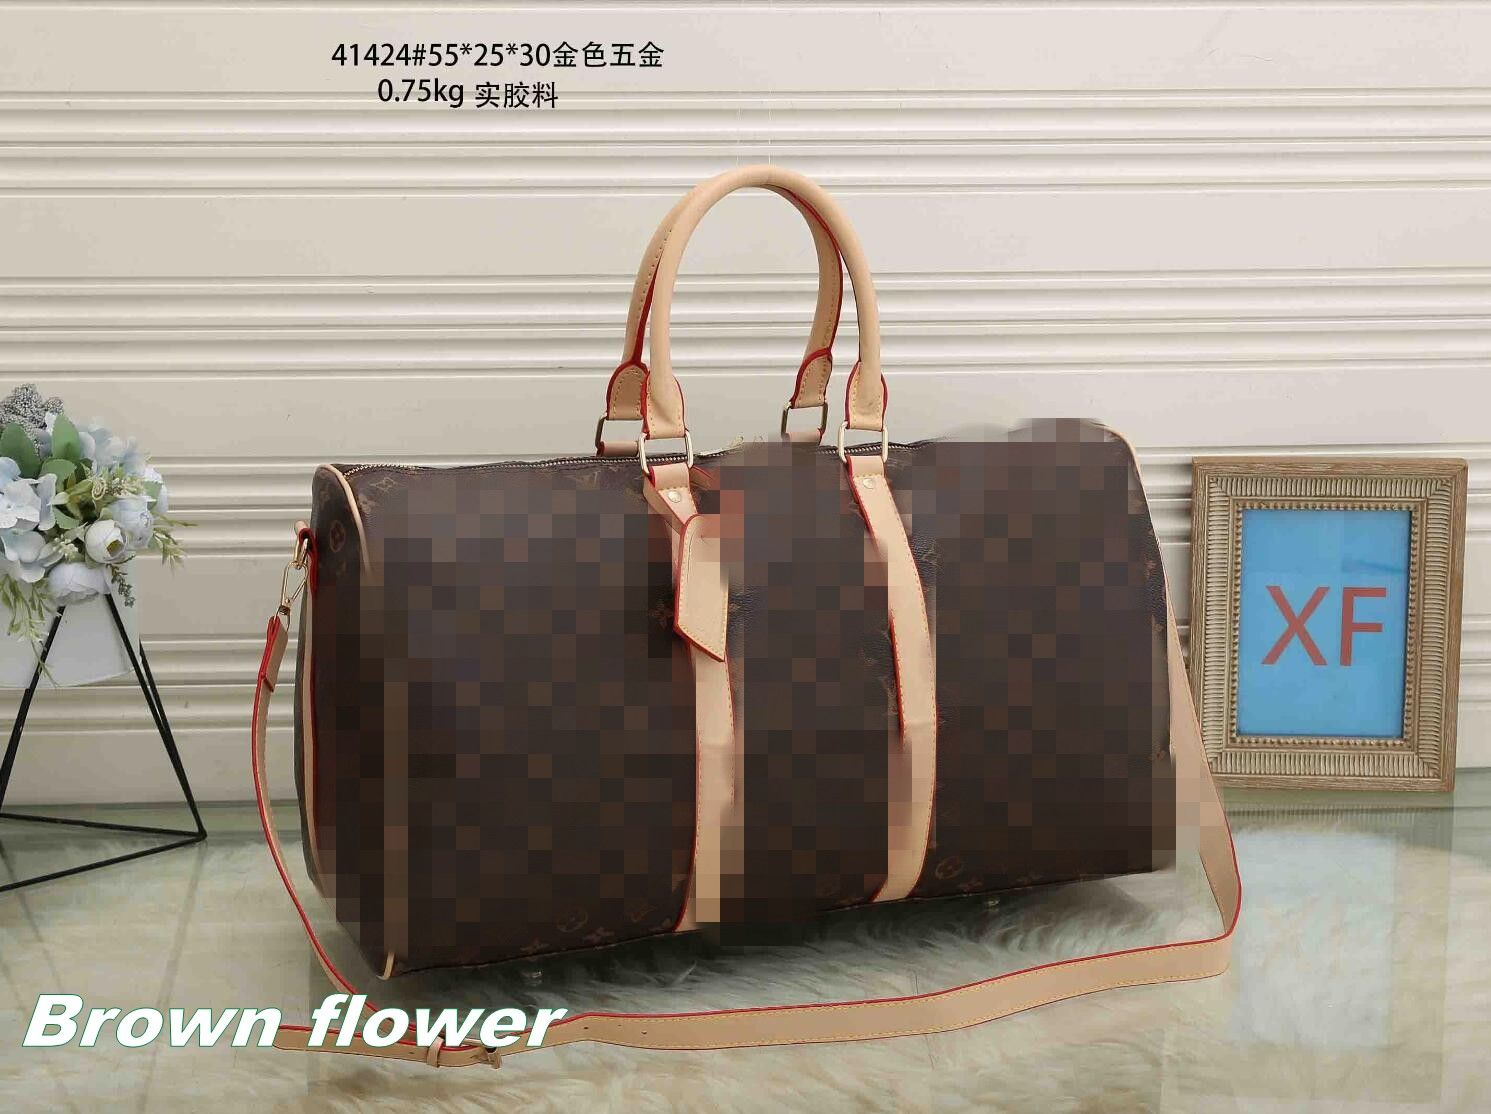 Brown flower bag